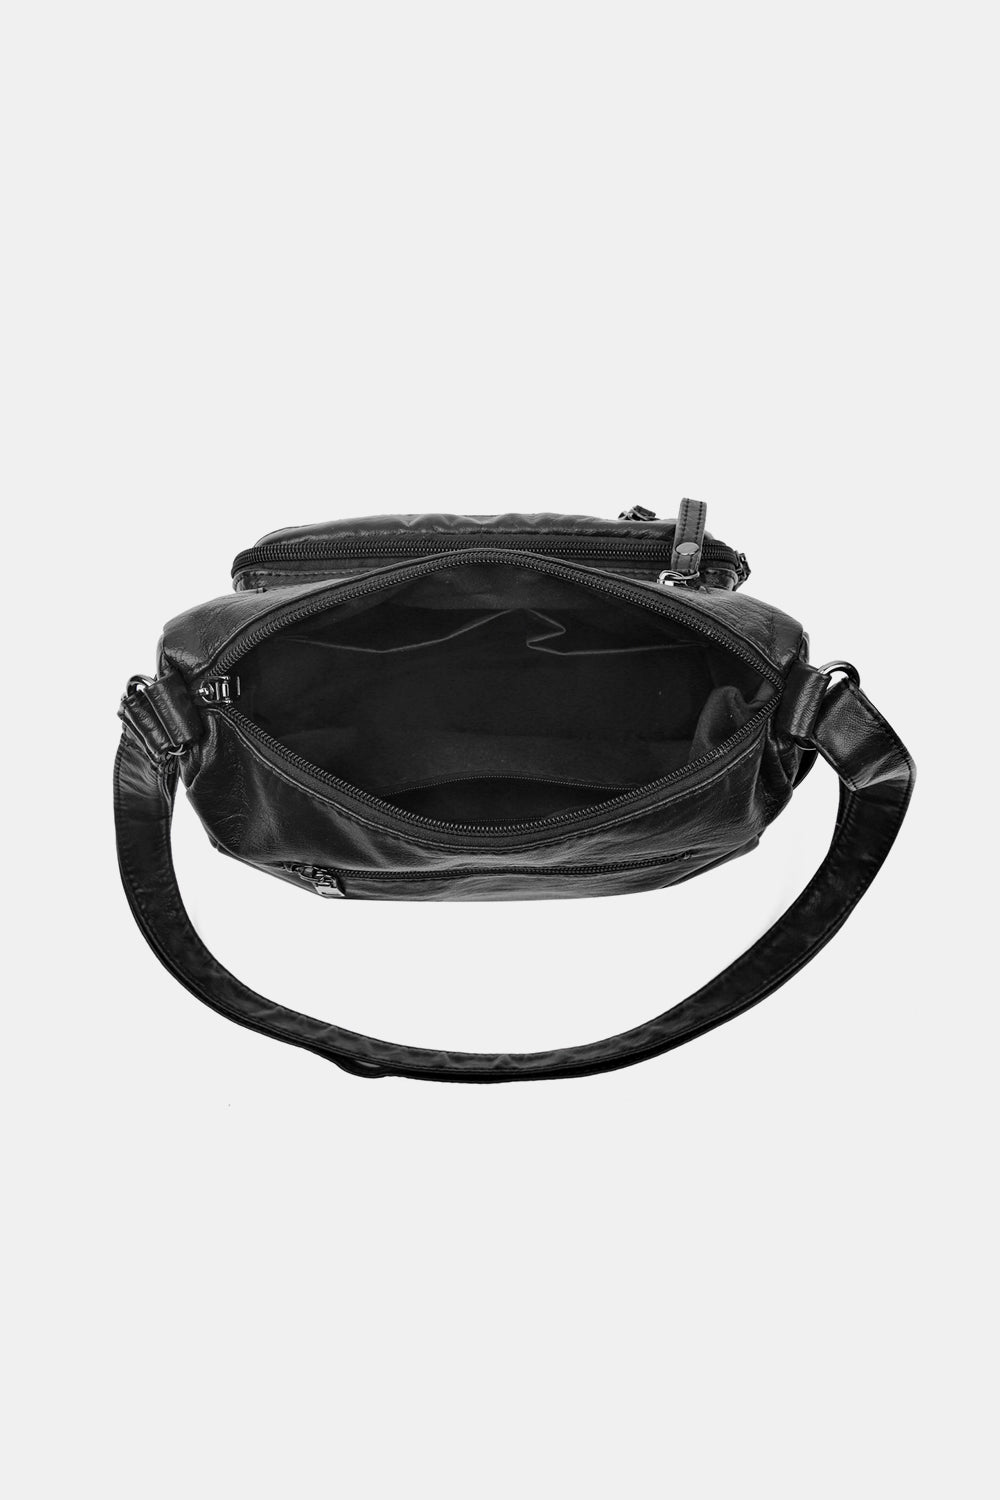 PU Leather Adjustable Strap Crossbody Bag - Thandynie